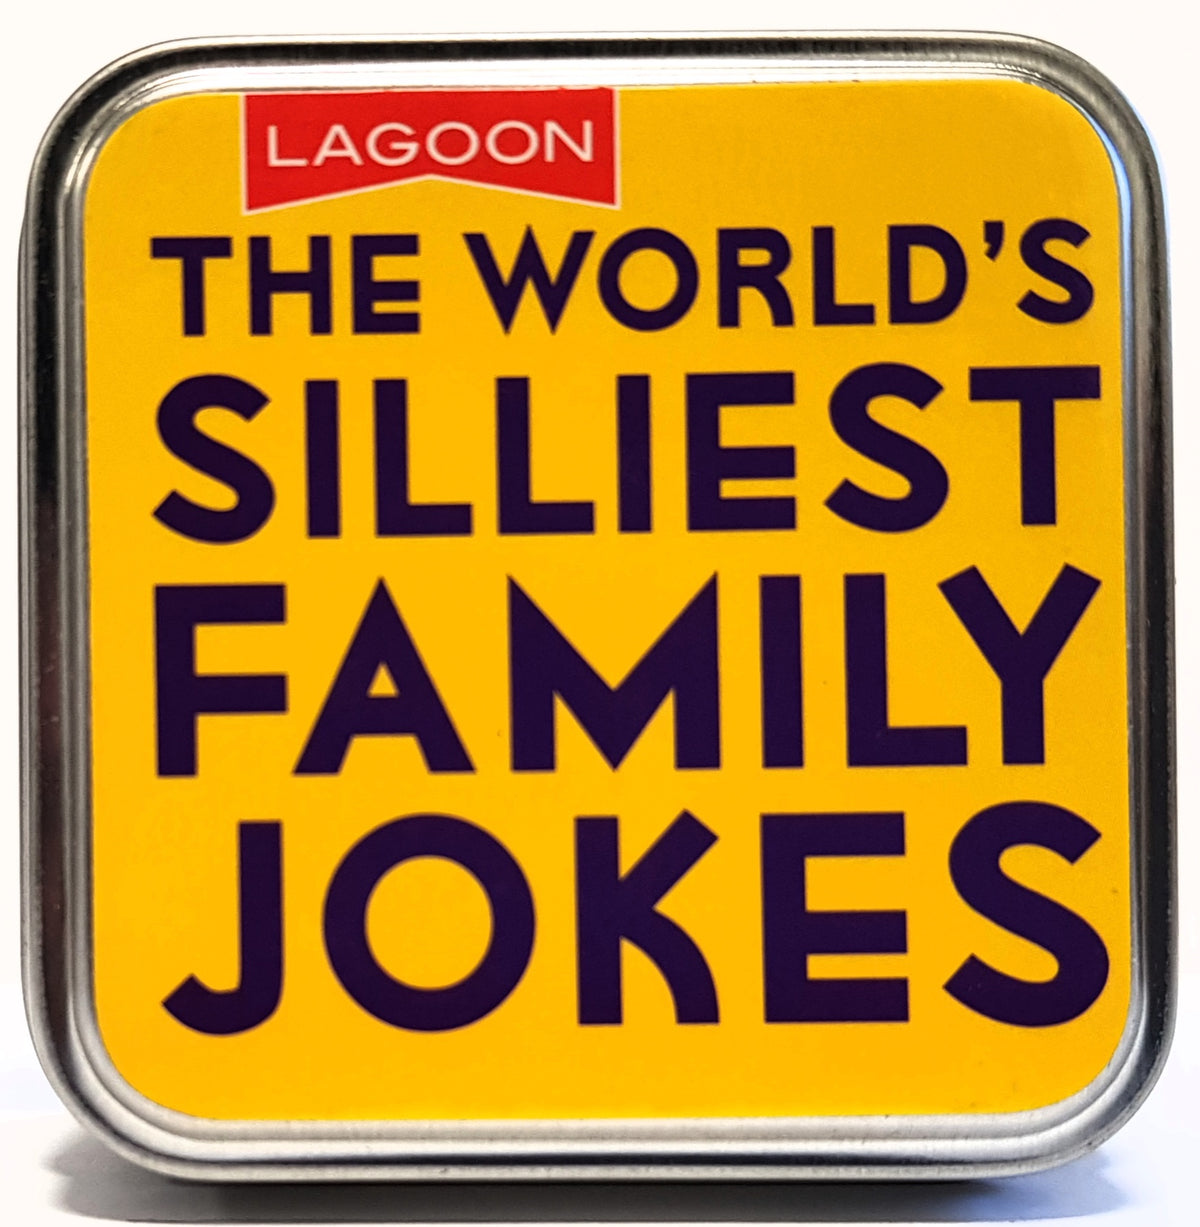 The Worlds Silliest Family Jokes Tin